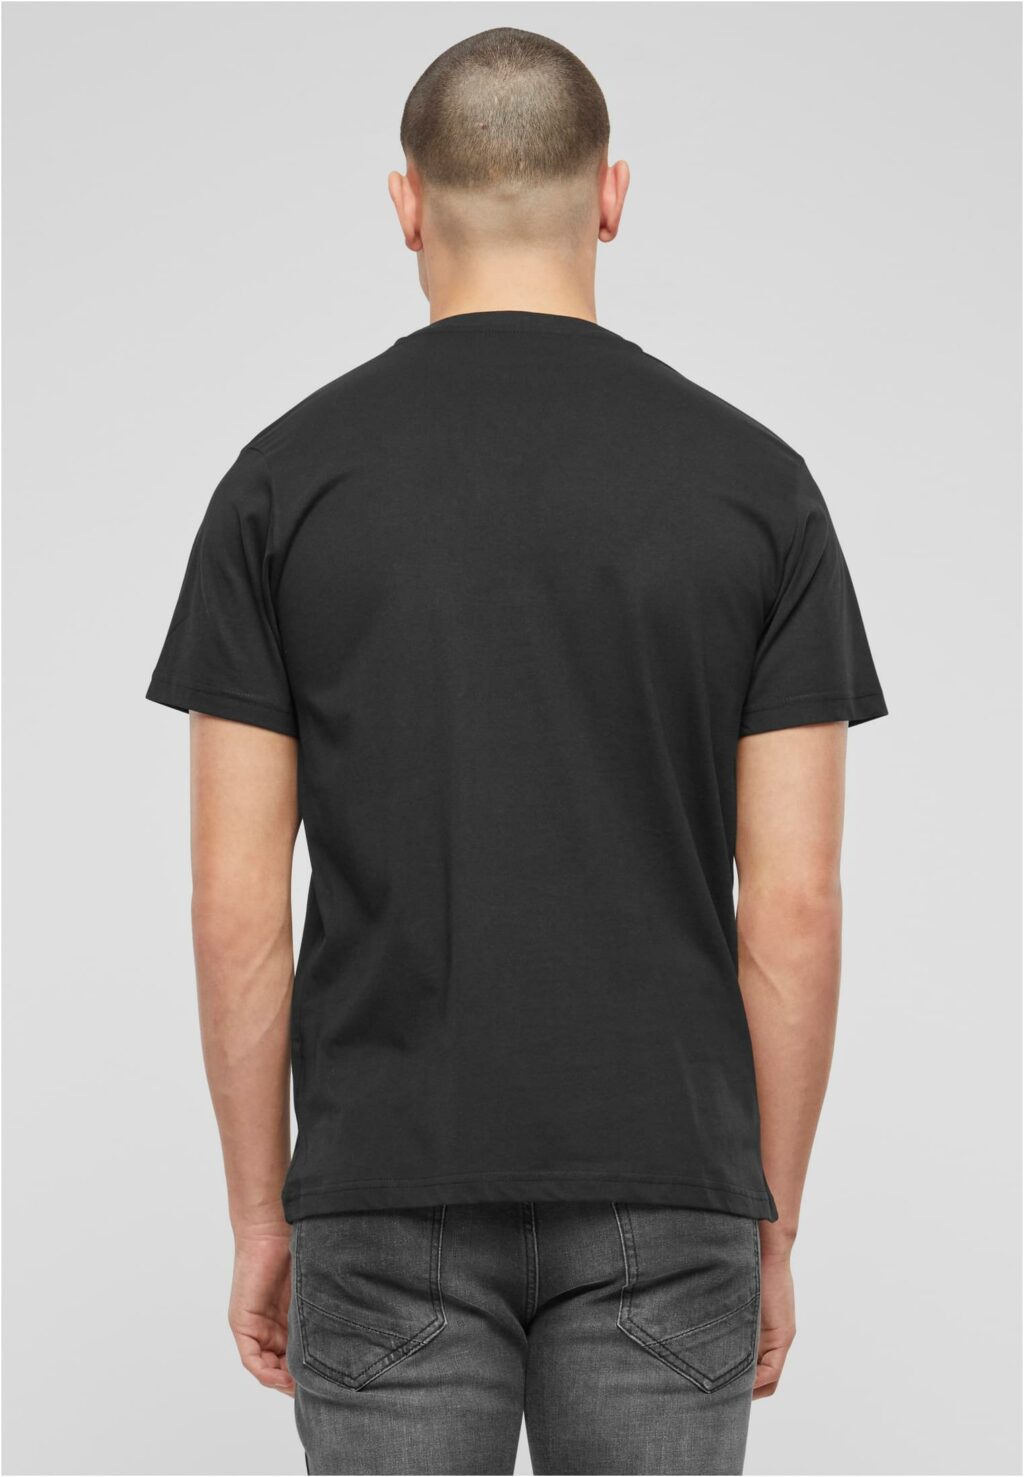 Brandit Iron Maiden Tee Shirt Design 3 ( glow in the dark pigment) black BD61049